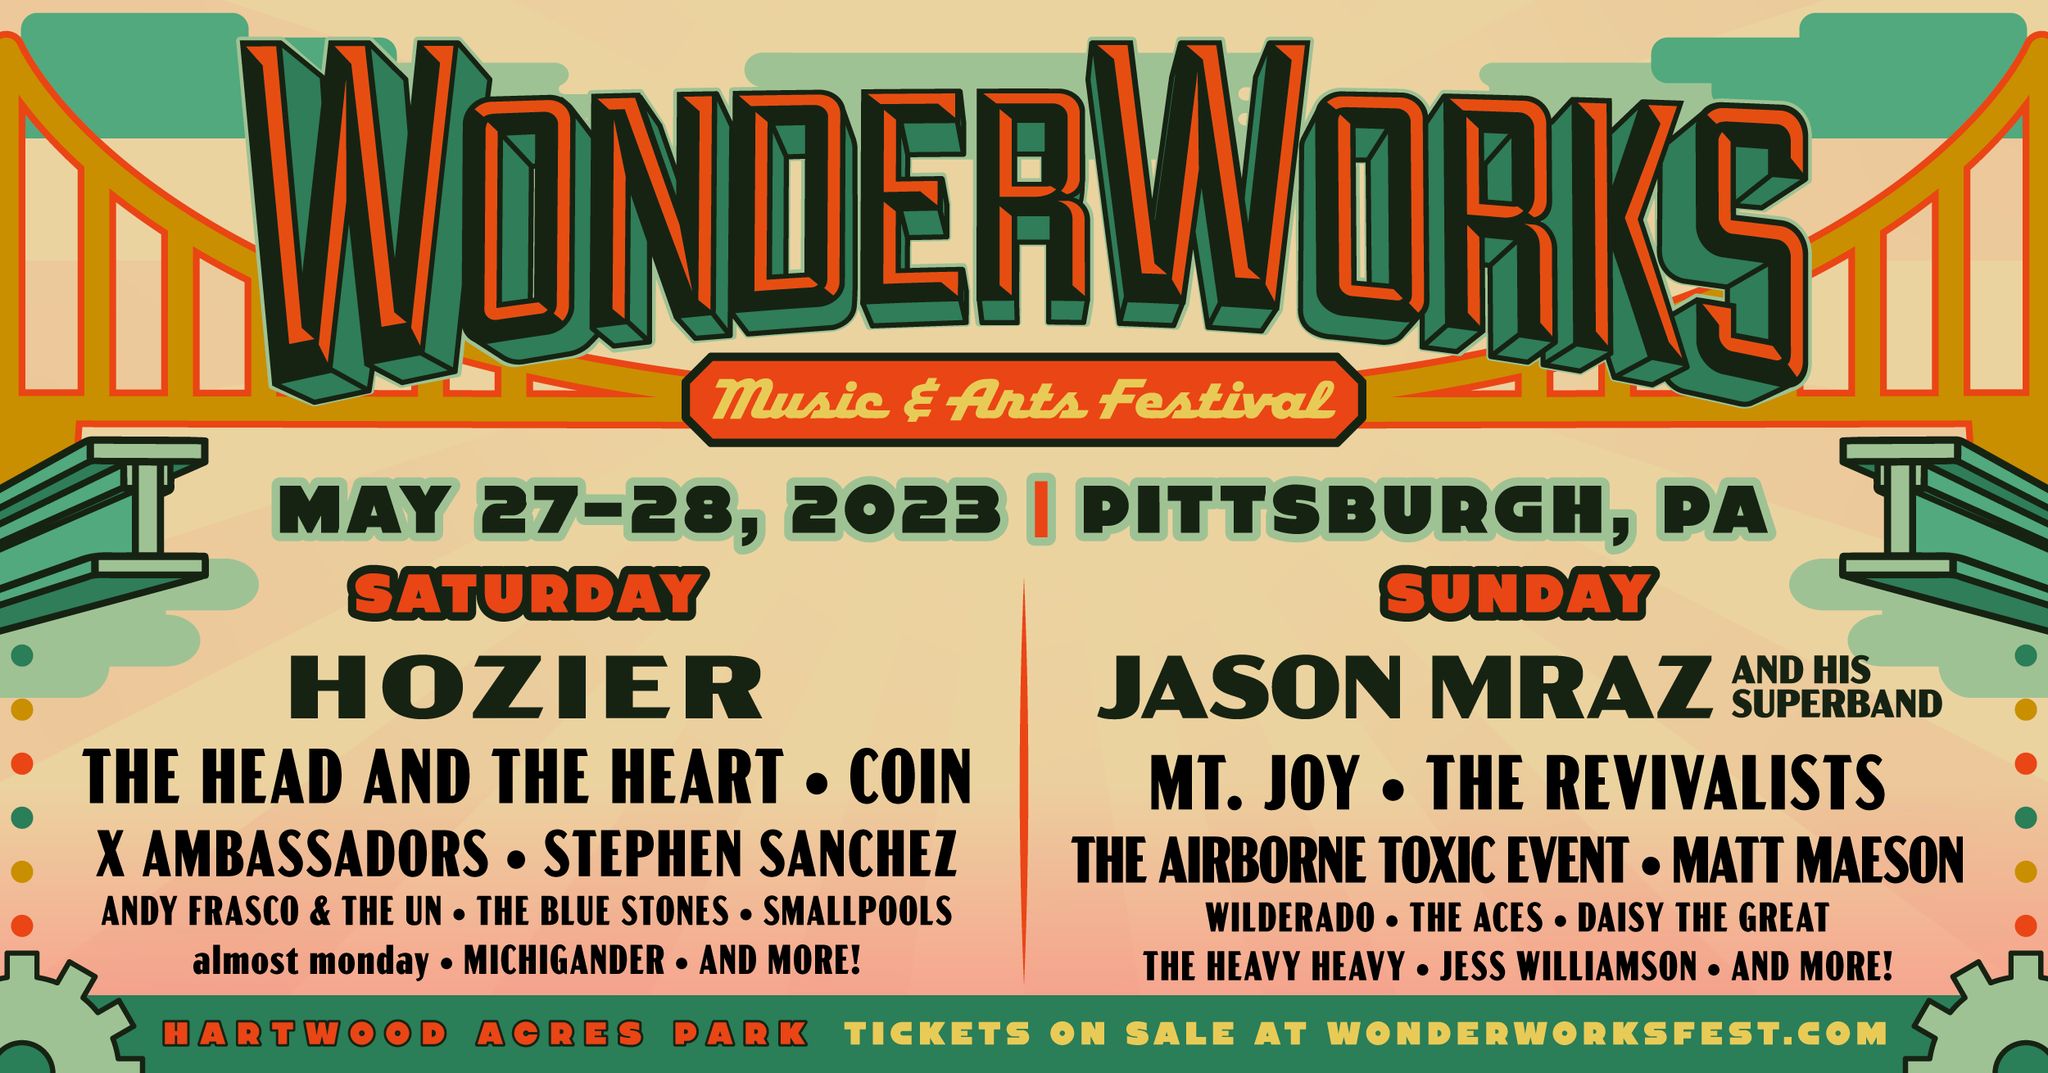 WonderWorks Music Festival Southwestern Pennsylvania Guide